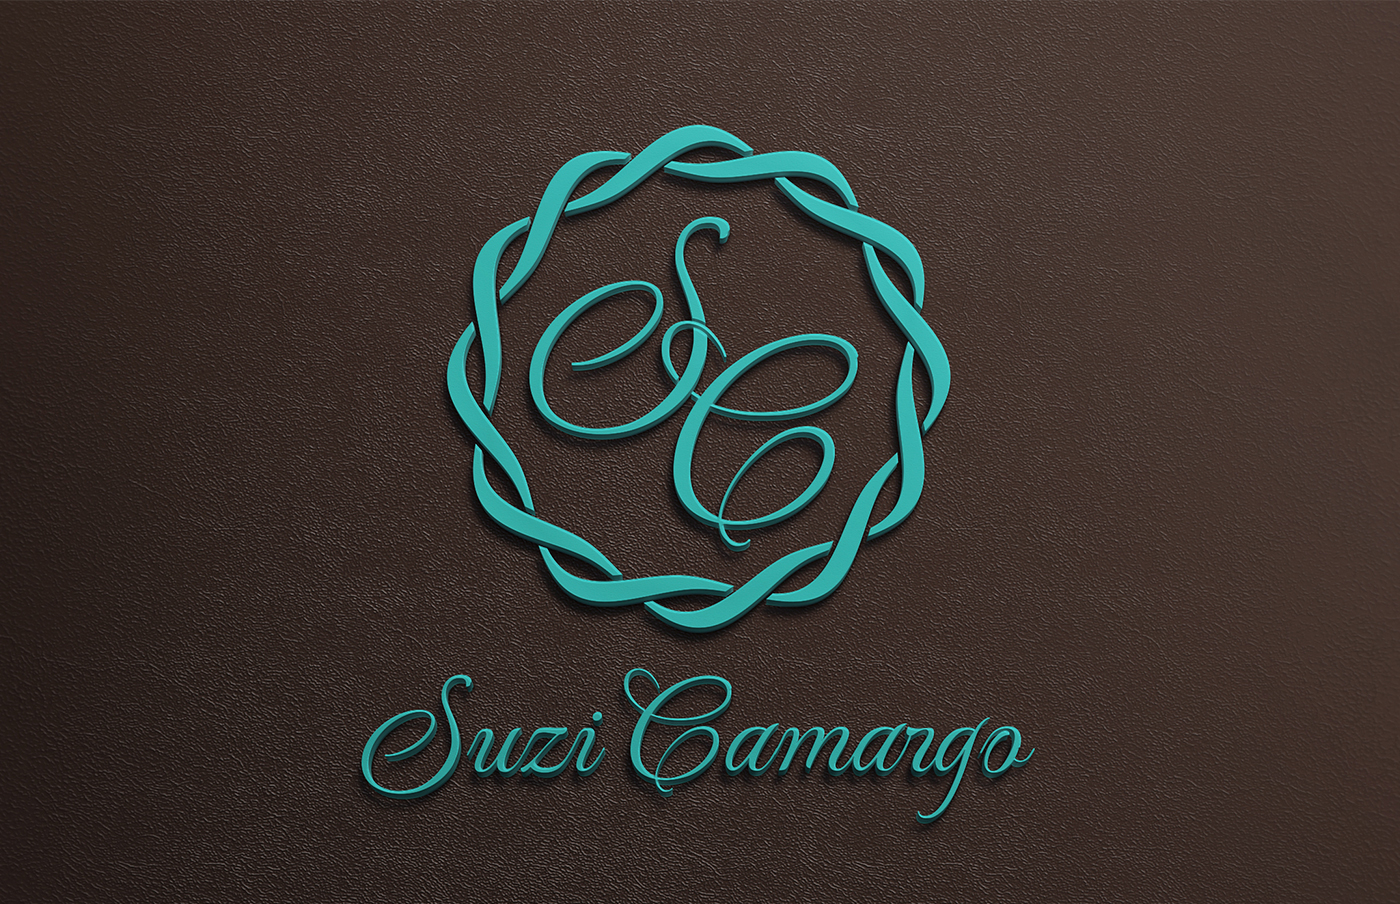 logo doces Suzi Camargo desenvolvimento projeto mark brand gestão de marca Brand Design identidade visual identidade corporativa Corporate Identity visual identity doces cupcakes